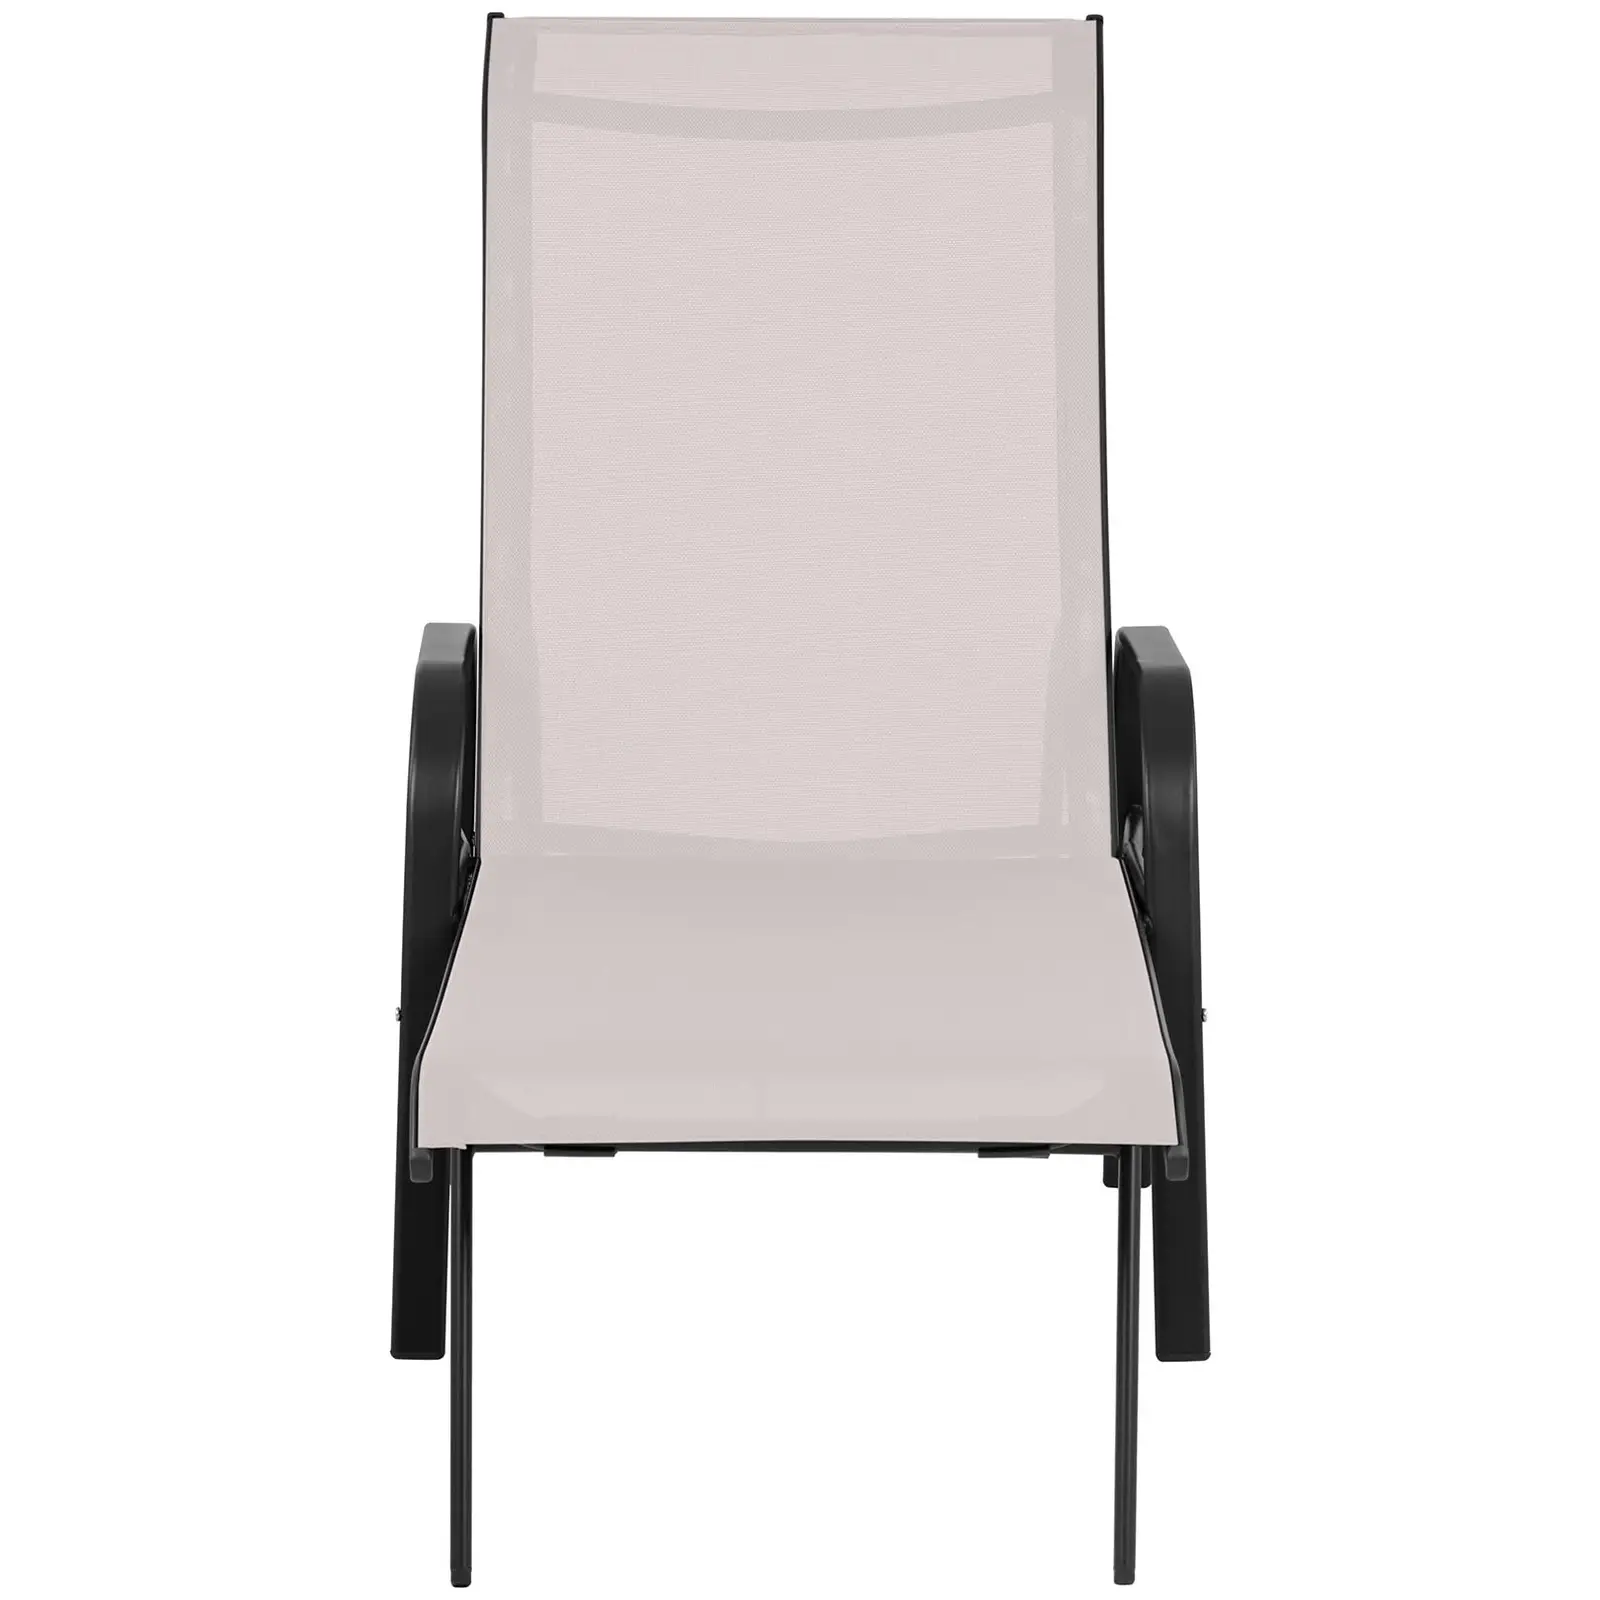 Sunbed - beige - steel frame - adjustable backrest